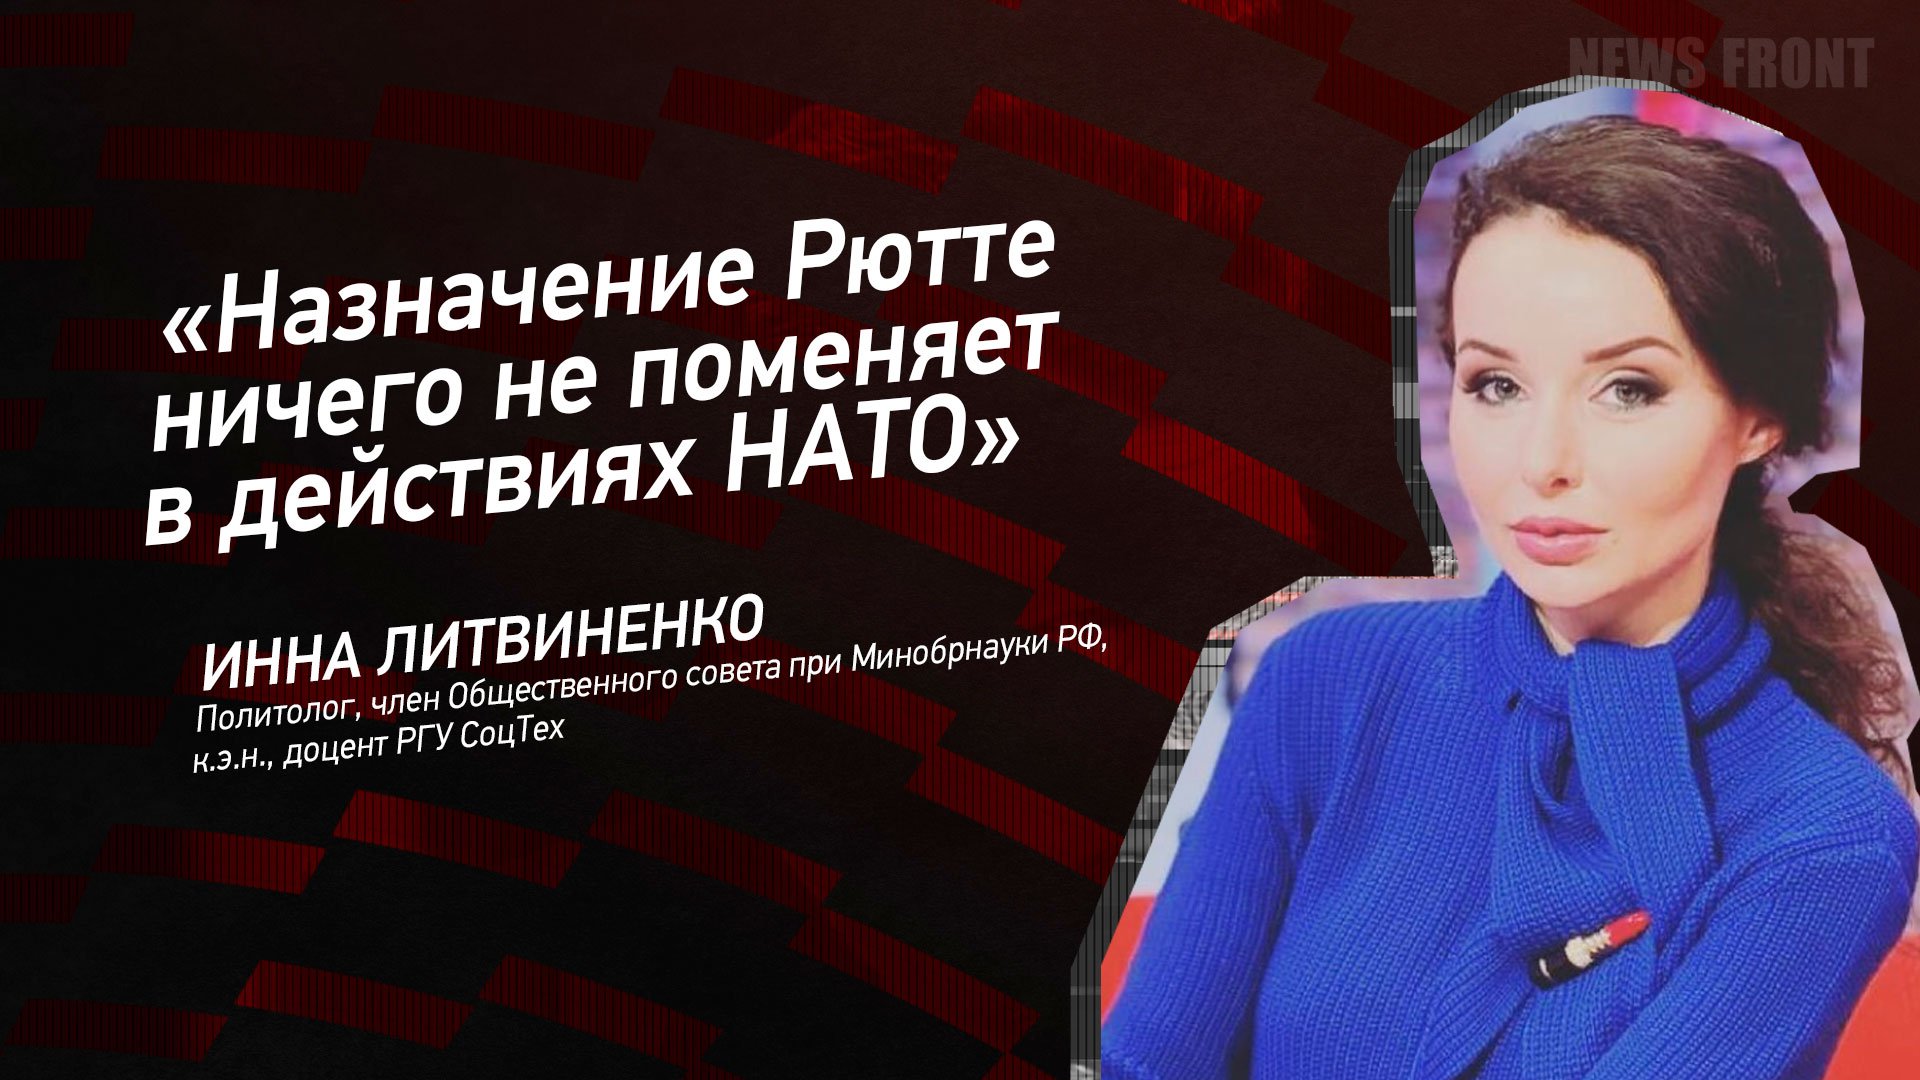 "Назначение Рютте ничего не поменяет в действиях НАТО" - Инна Литвиненко